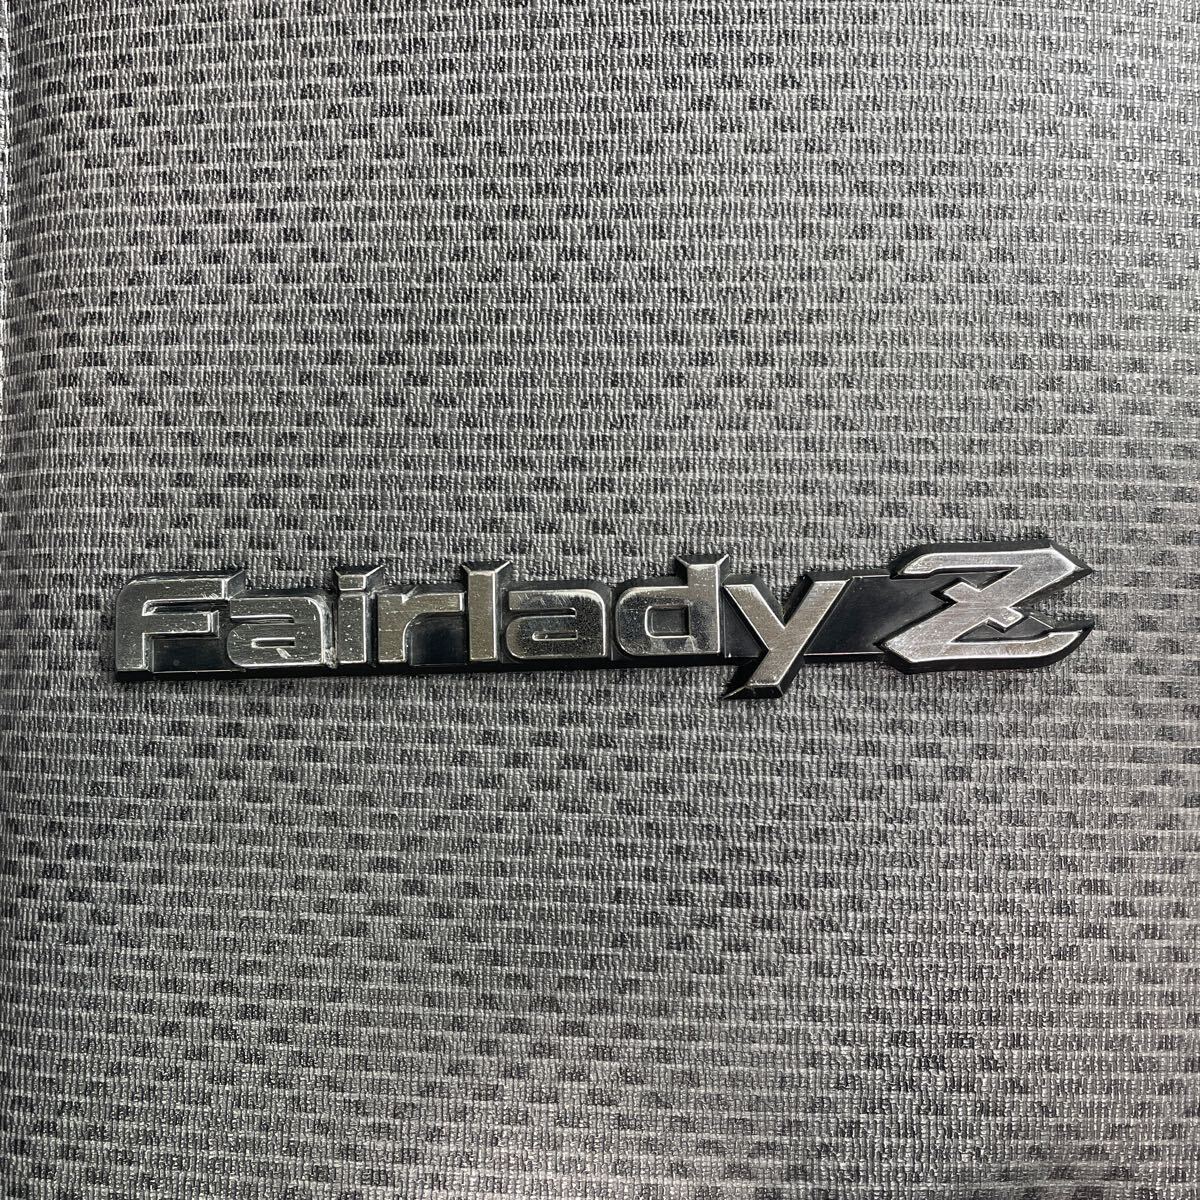  бесплатная доставка! очень редкий! Fairlady Z Z S130Z 280Z Z31 подлинная вещь Nissan оригинальный эмблема 